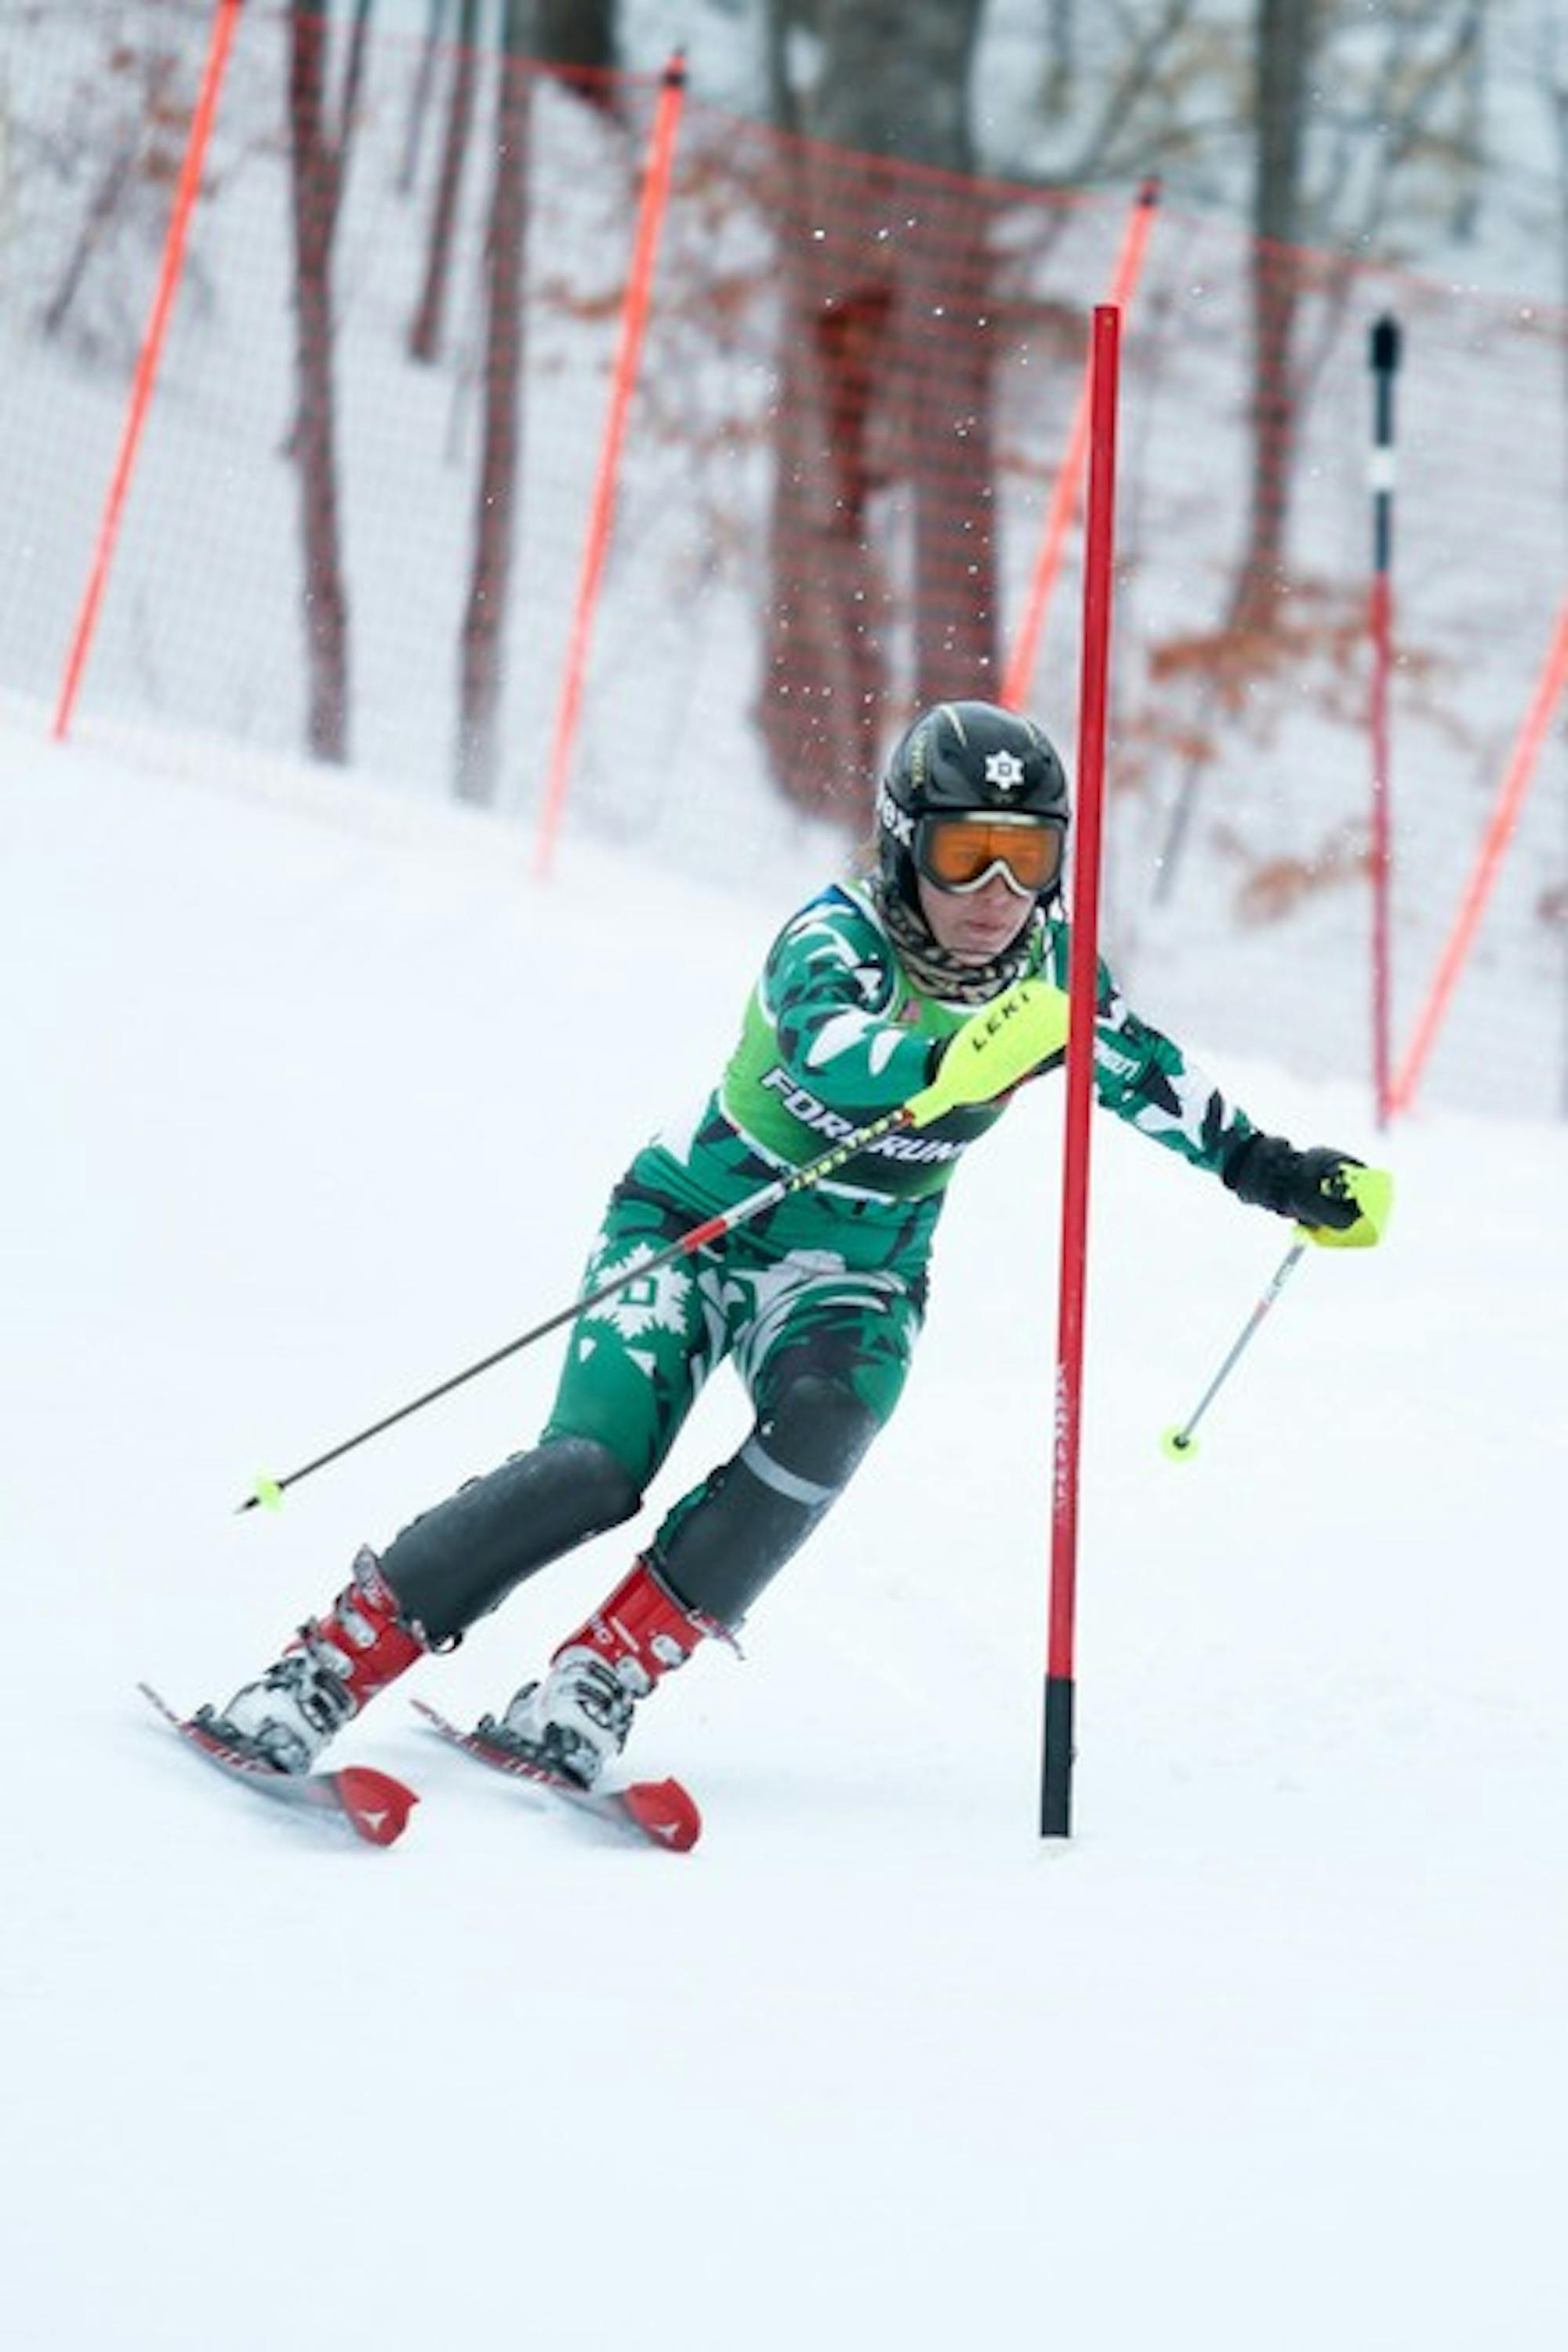 03.28.11.sports.Ski